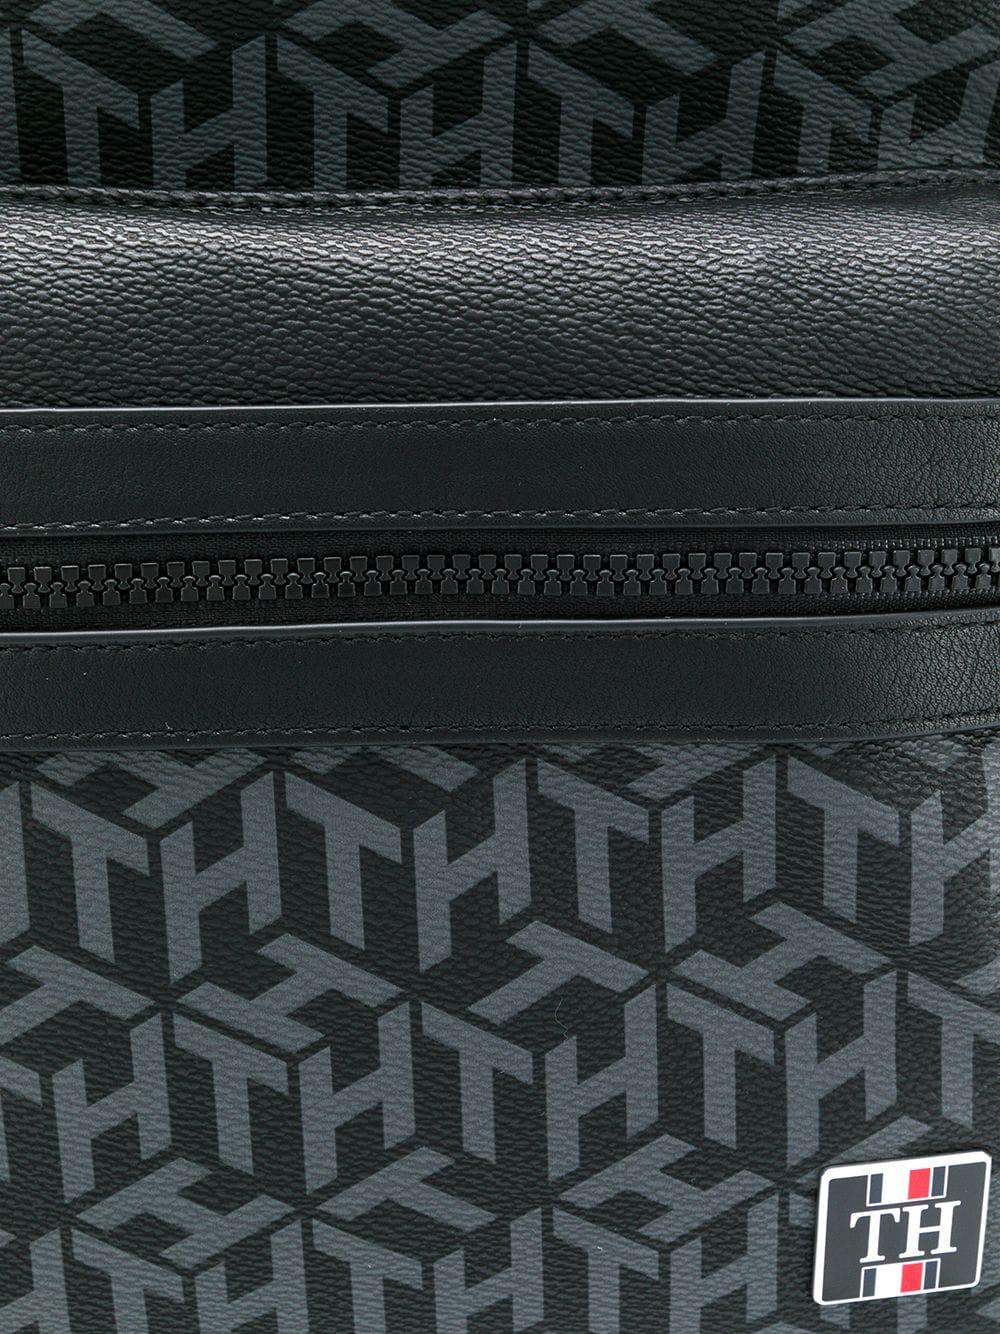 Tommy Hilfiger Monogram Logo Backpack in Black for Men